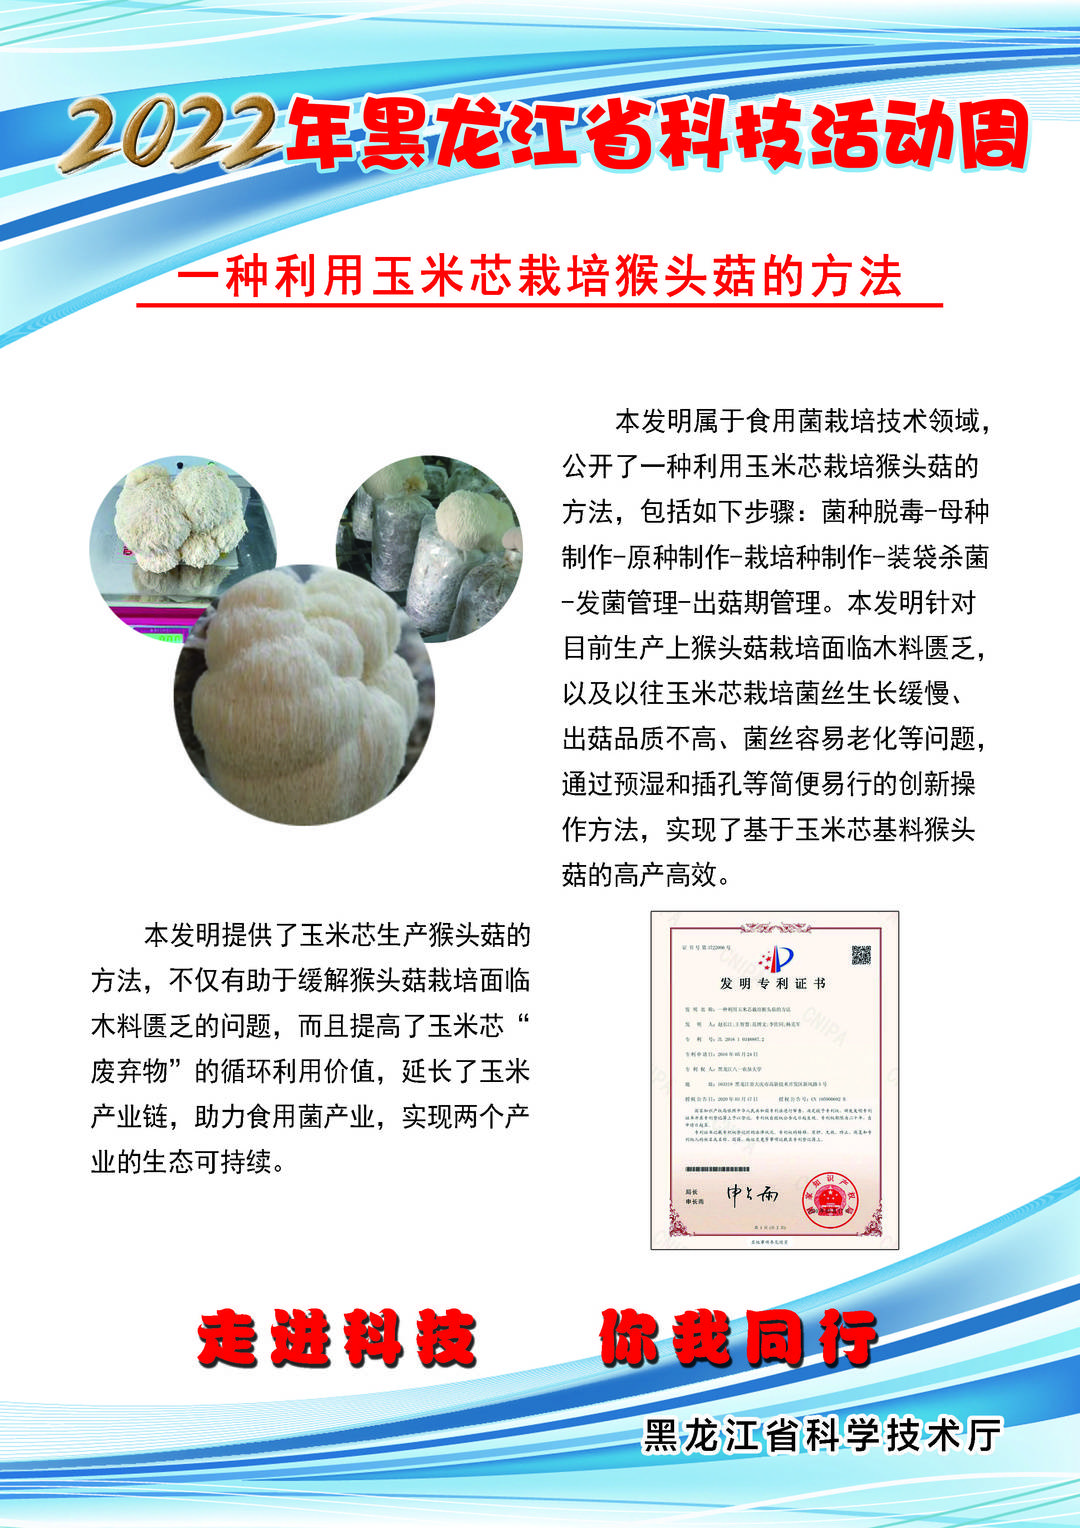 黑龙江省科技创新成果展丨一种利用玉米芯栽培猴头菇的方法